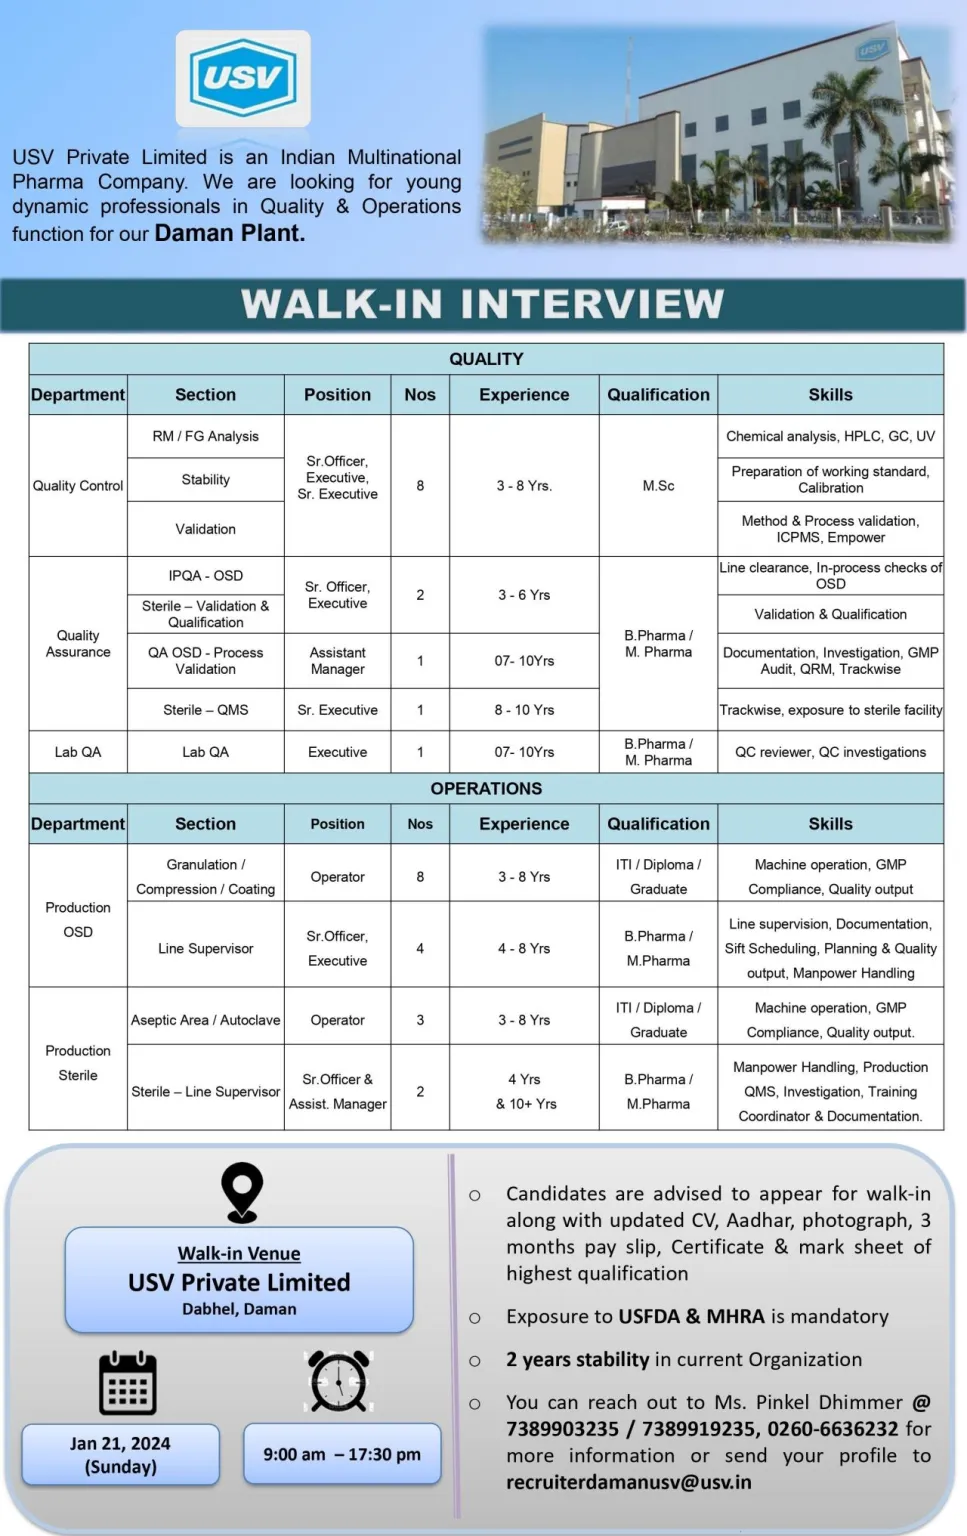 USV Pvt. Ltd - Walk-In Interviews for QC, QA,Production on 21st Jan 2024